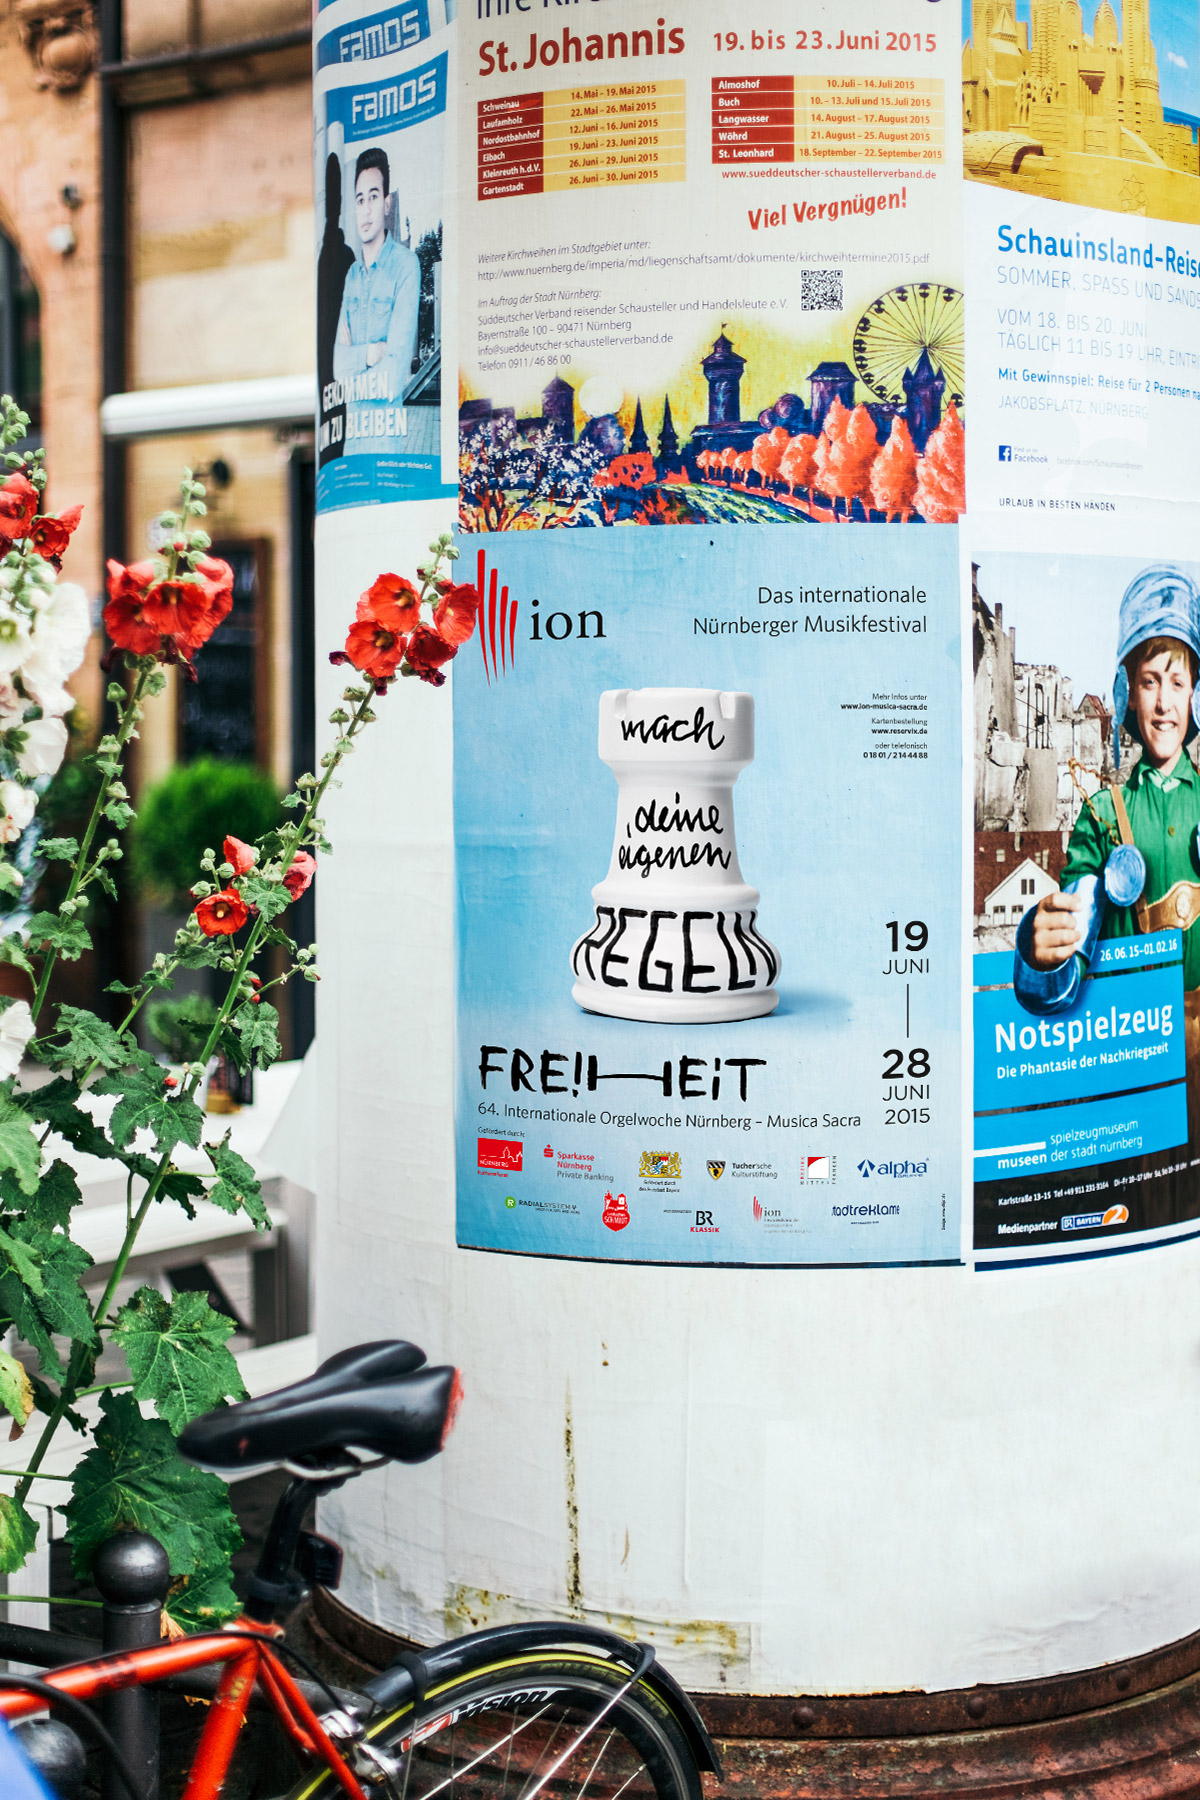 Internationale Orgelwoche Nürnberg – Festival für Klassische und Geistliche Musik. Festivalkampagne, Logolettering, Key Visual, Corporate Design von ELLIJOT